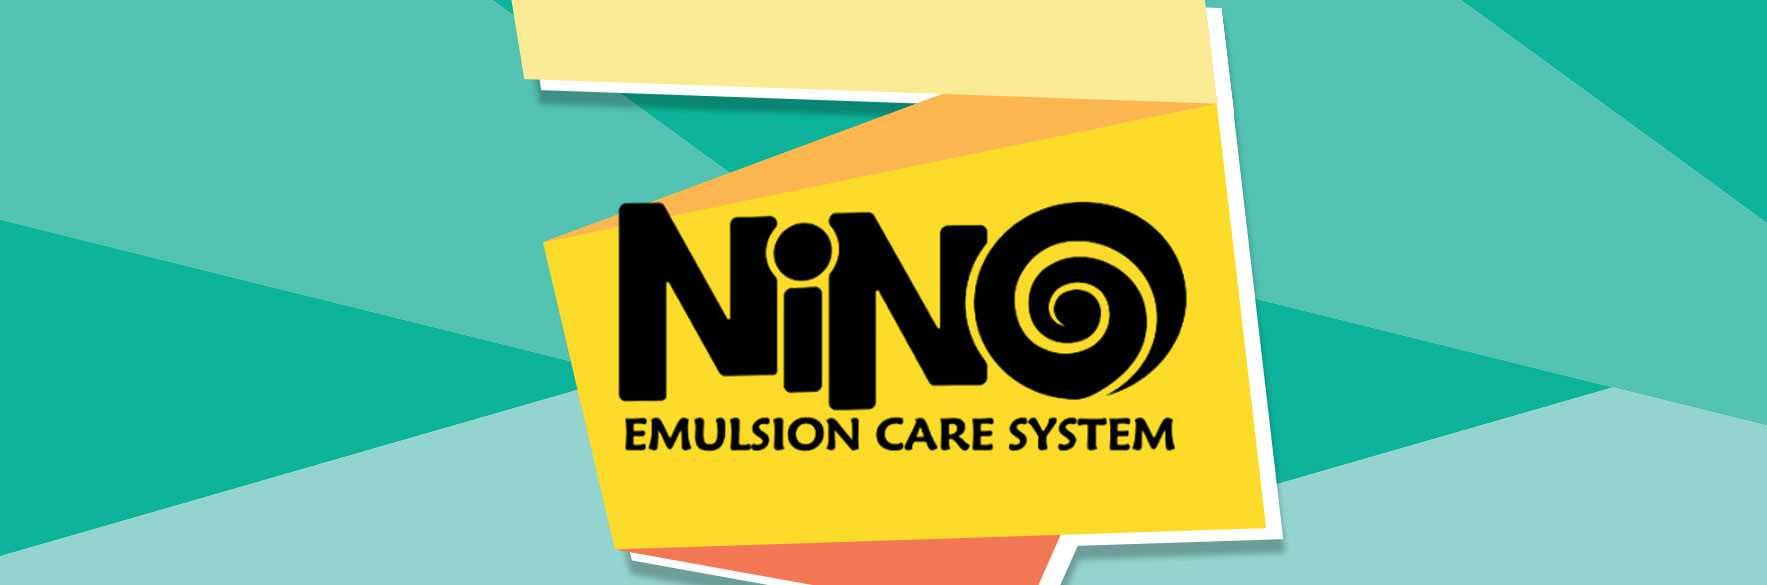 محصولات نینو NINO بهداشتی